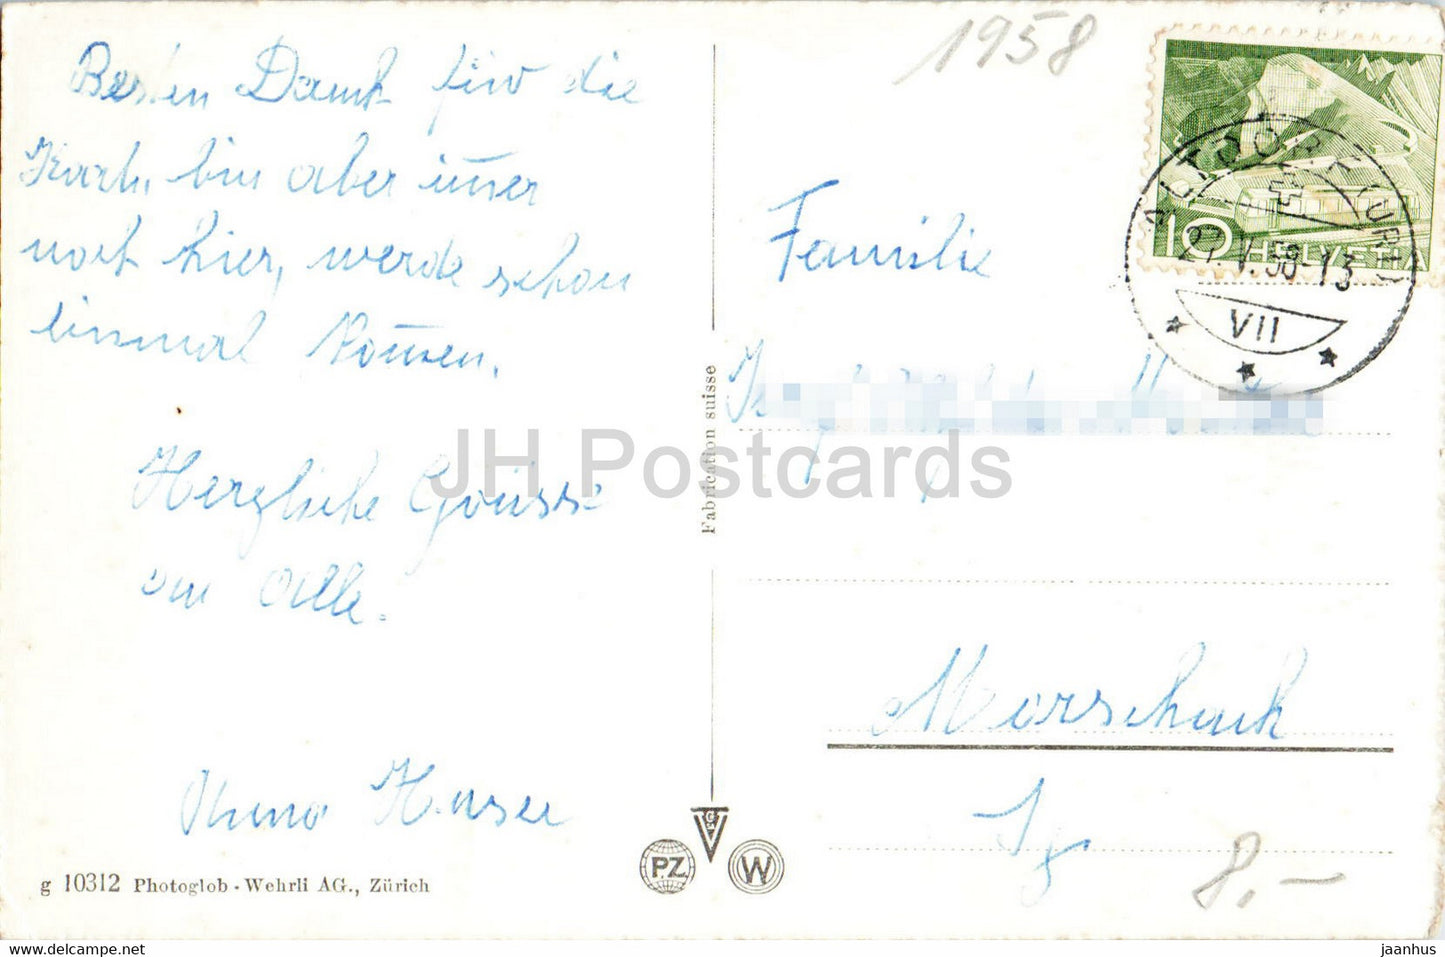 Axenstrasse am Vierwaldstättersee mit Glitschen und Urirotstock - 10312 - alte Ansichtskarte - 1958 - Schweiz - gebraucht